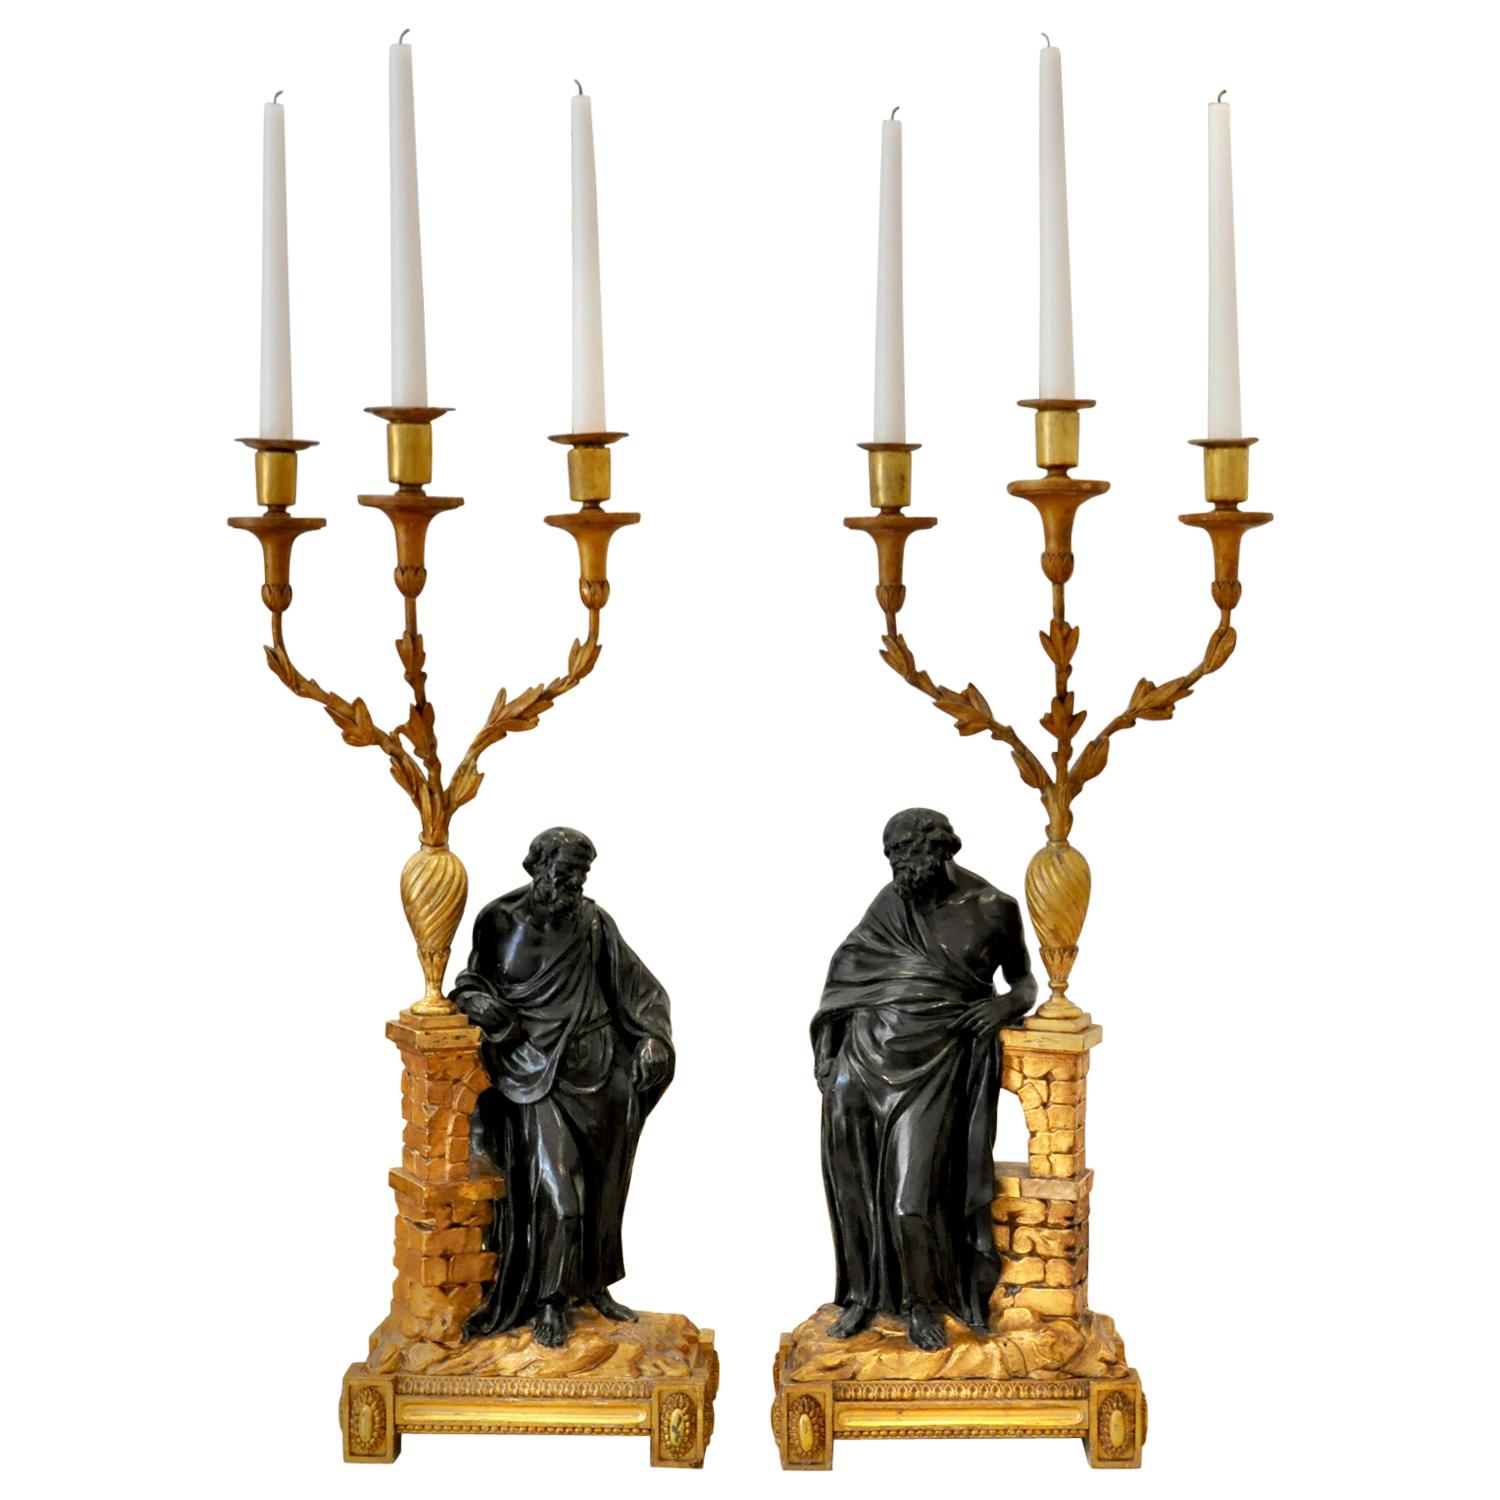 Paire de candélabres en bois doré irlandais du 19ème siècle représentant Socrate et Platon